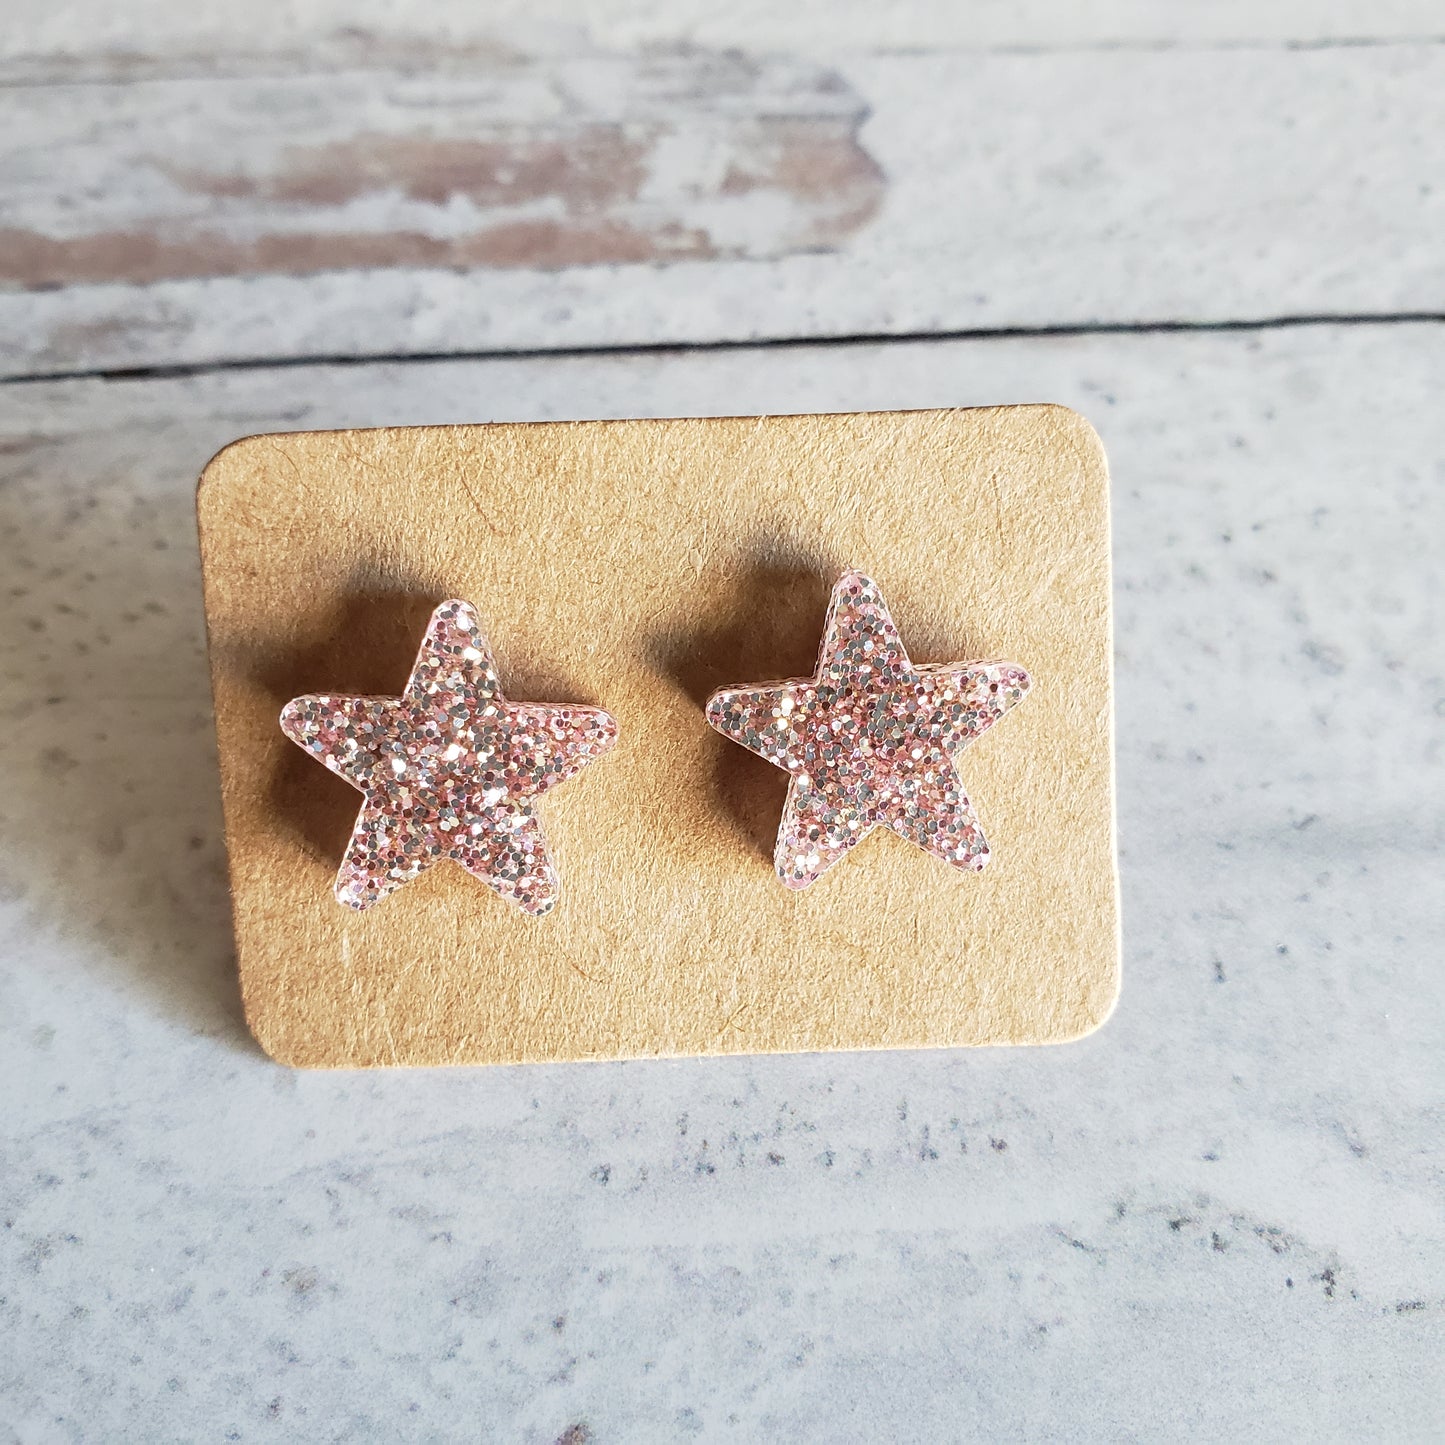 Rose gold tone glitter star stud earrings on earring cards